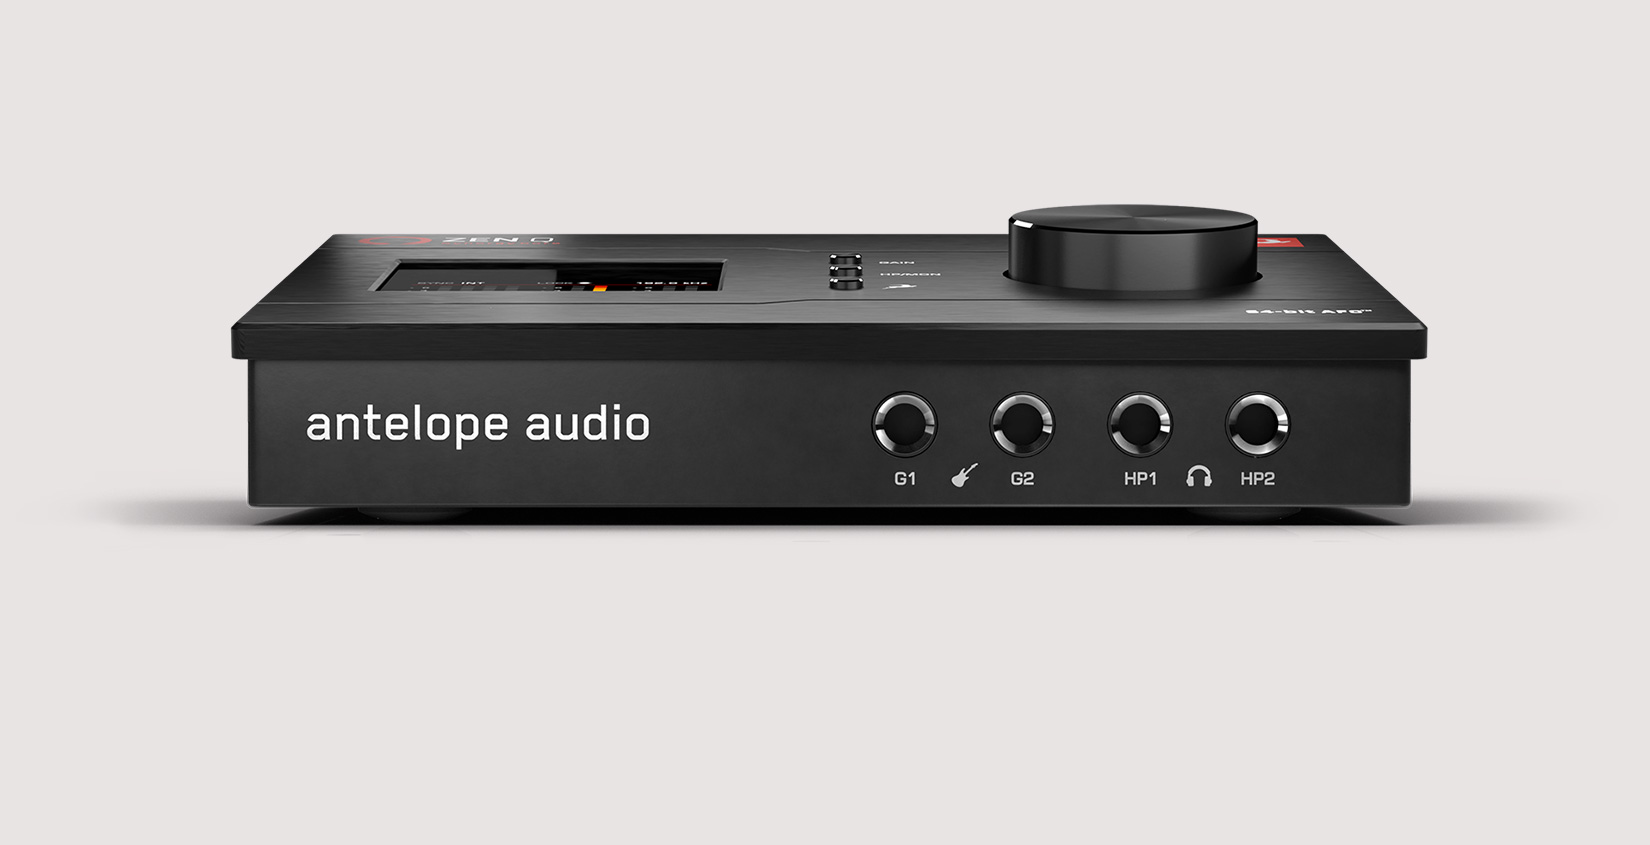 Antelope Audio Zen Q Synergy Core по цене 70 000 ₽